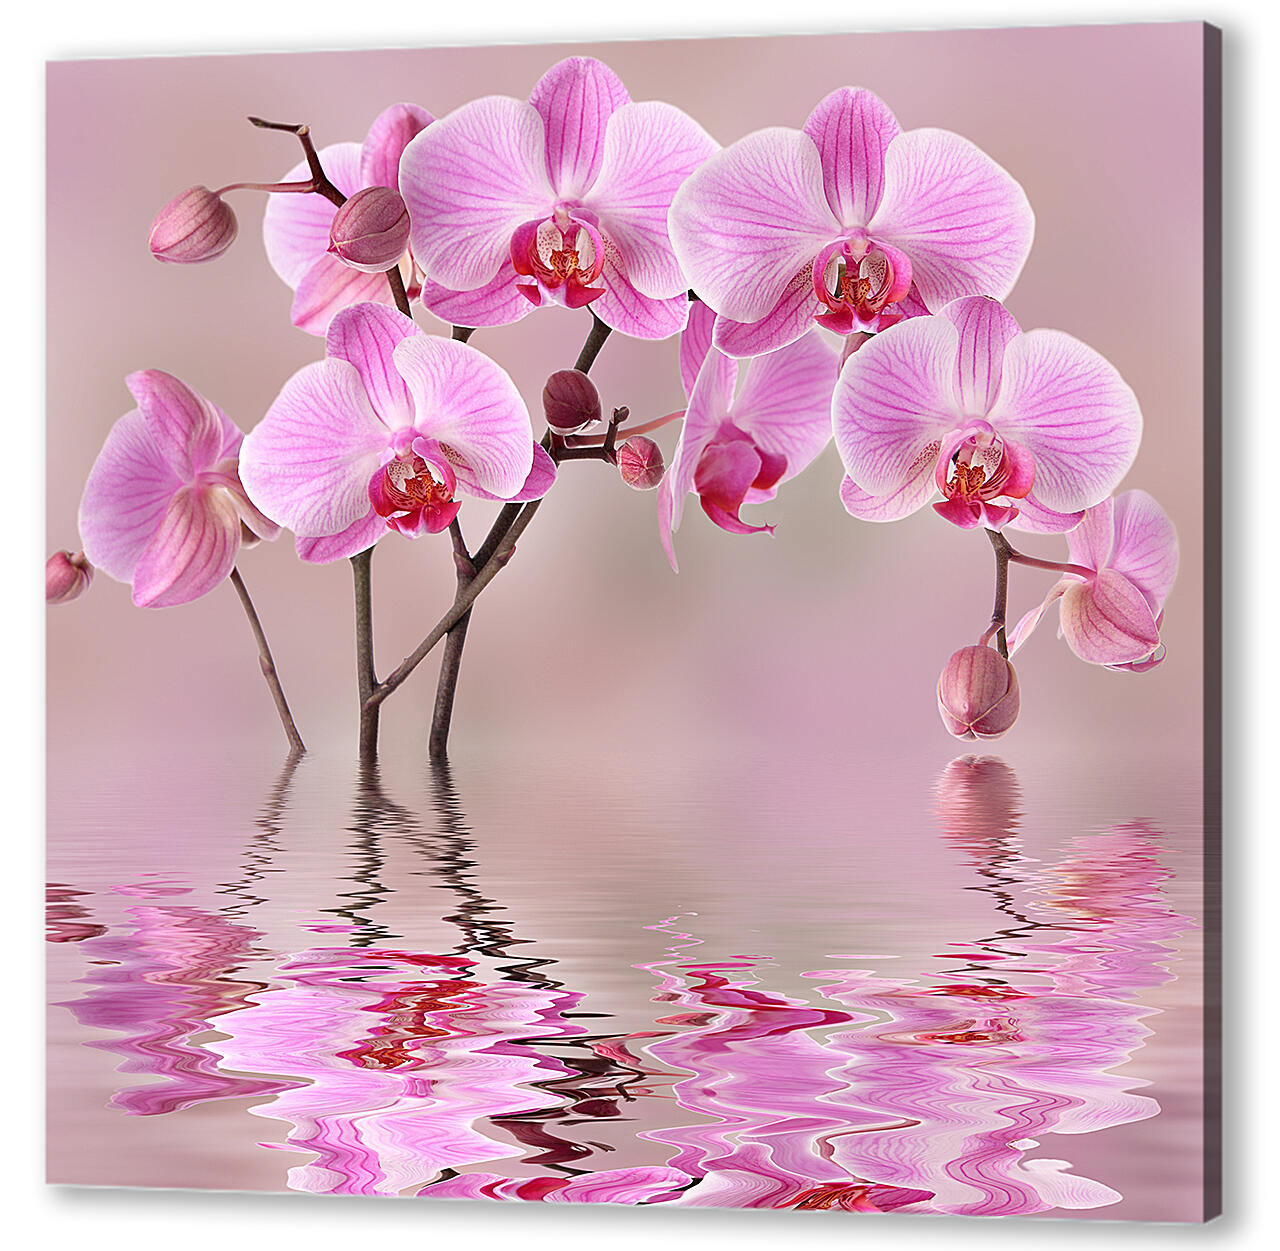 Орхидеи над водой
